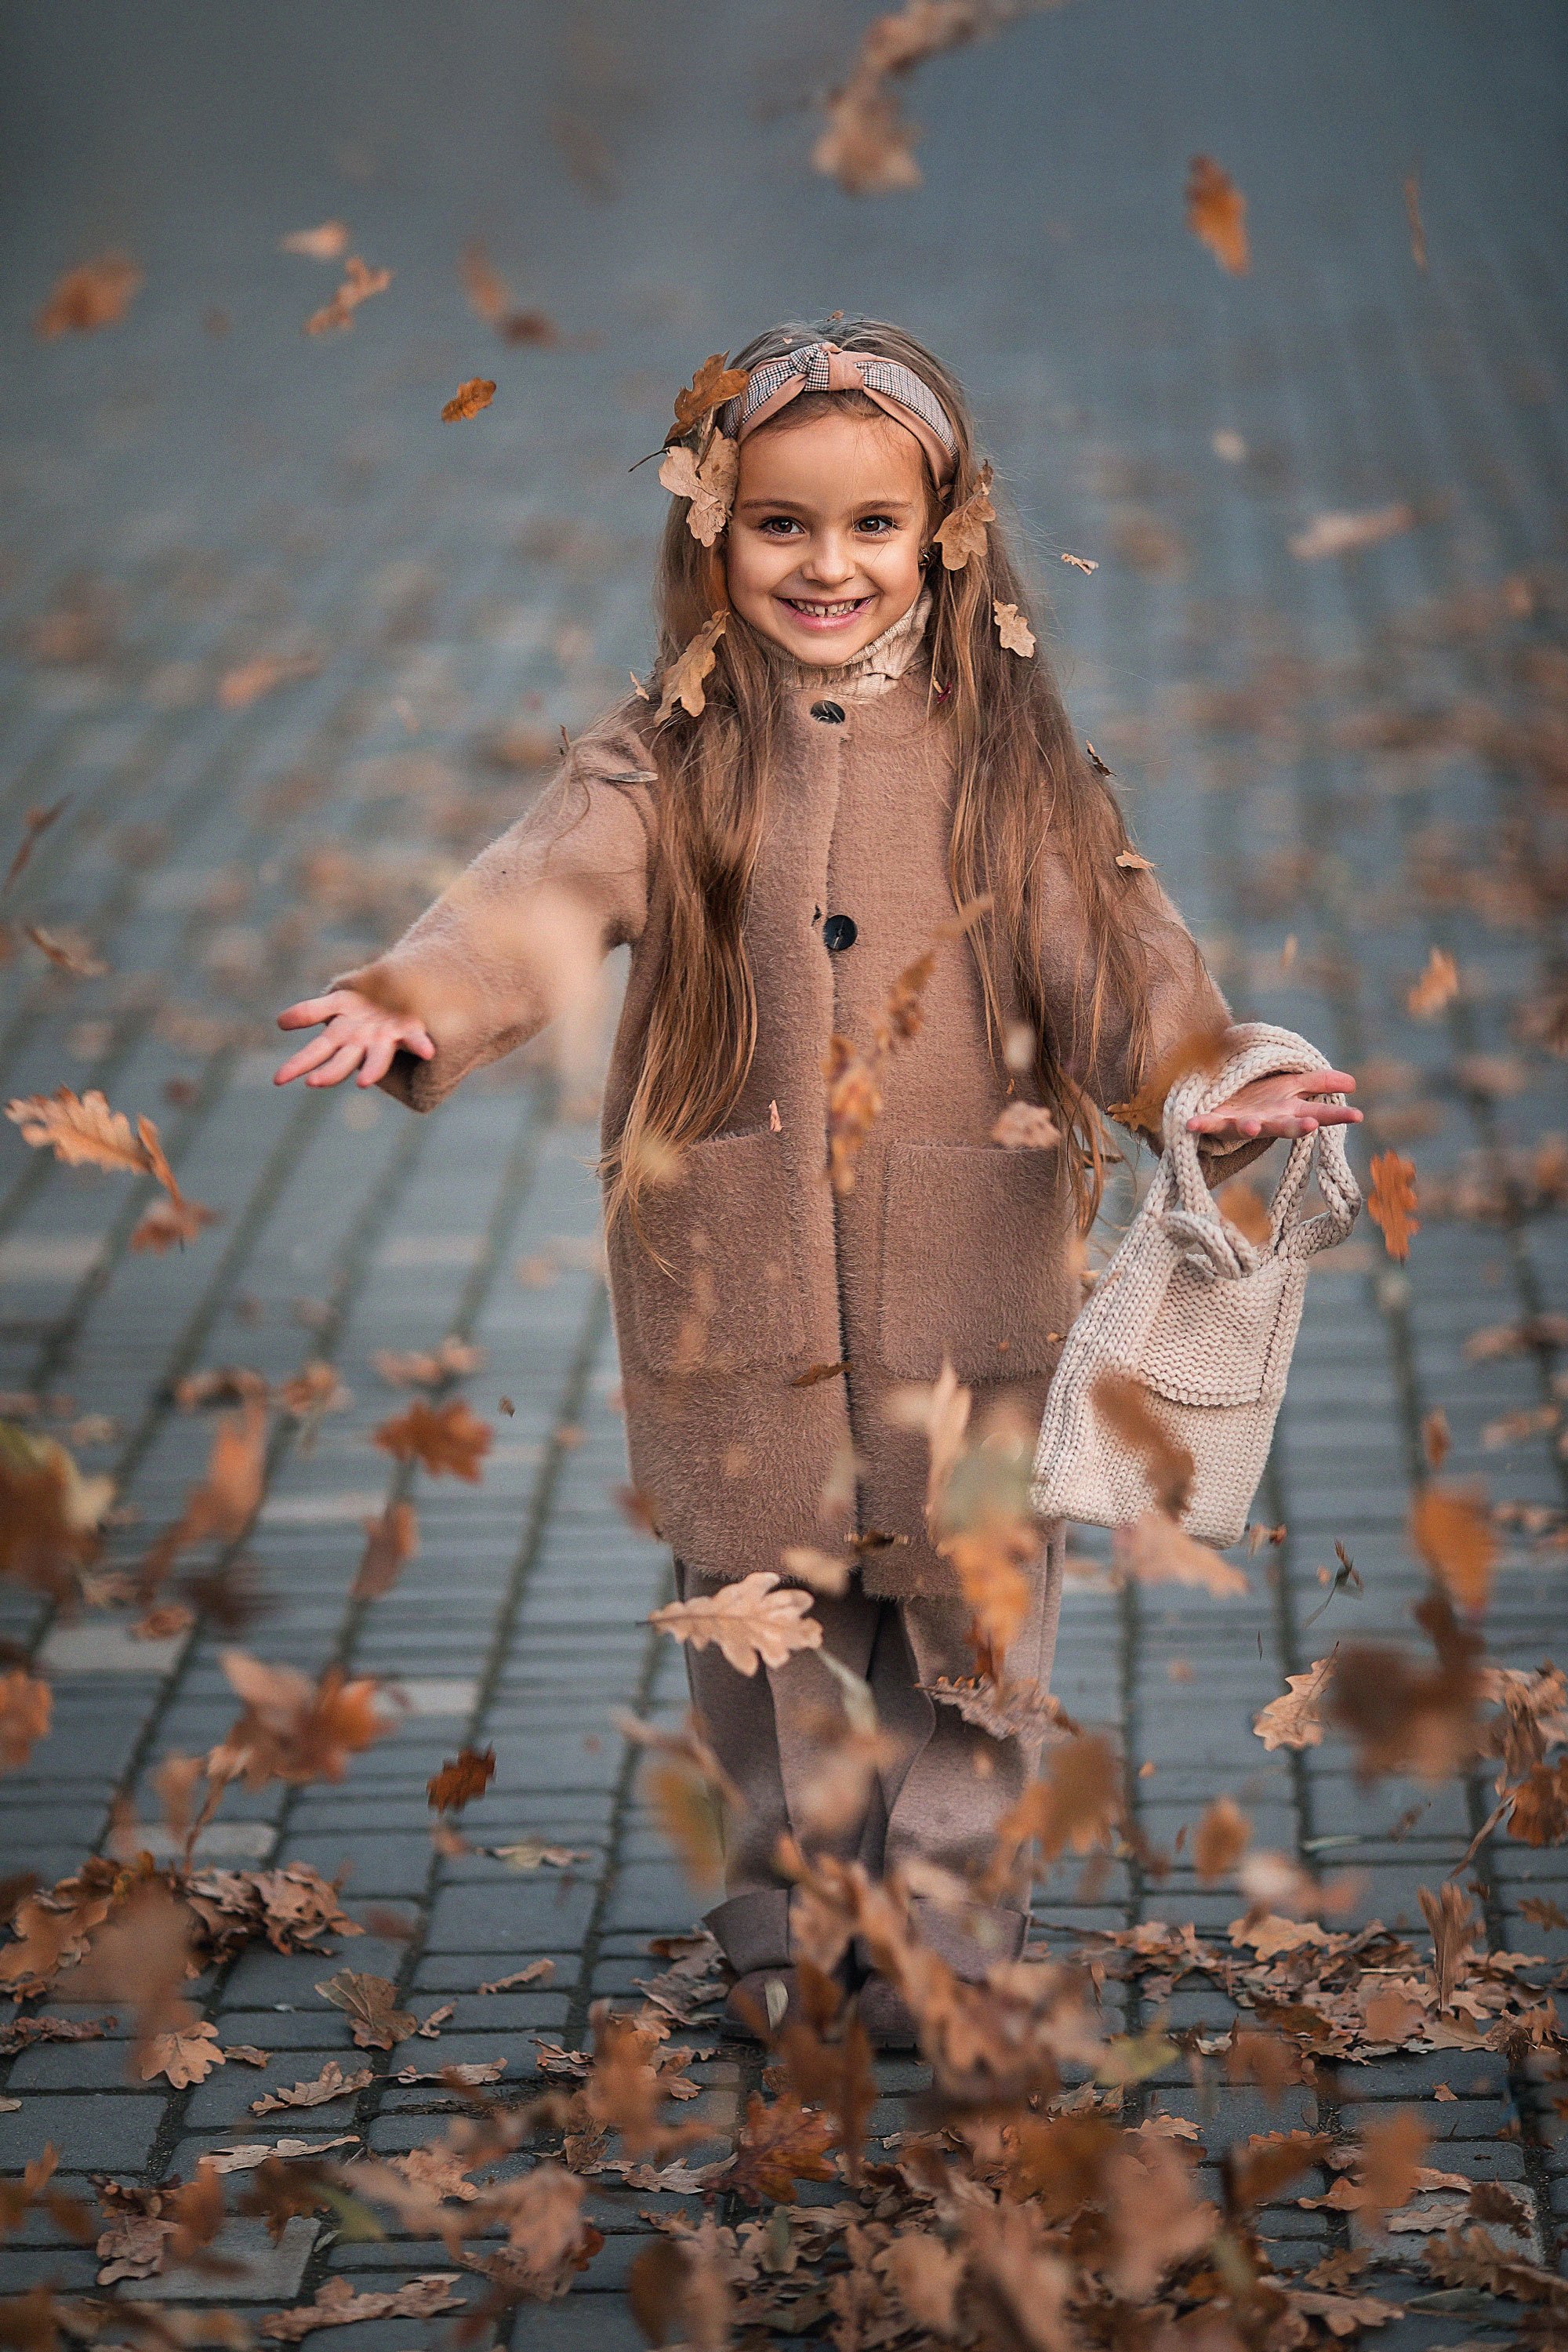 осень, детский портрет, детский фотограф, листья, листопад, ноябрь, Александра Пименова